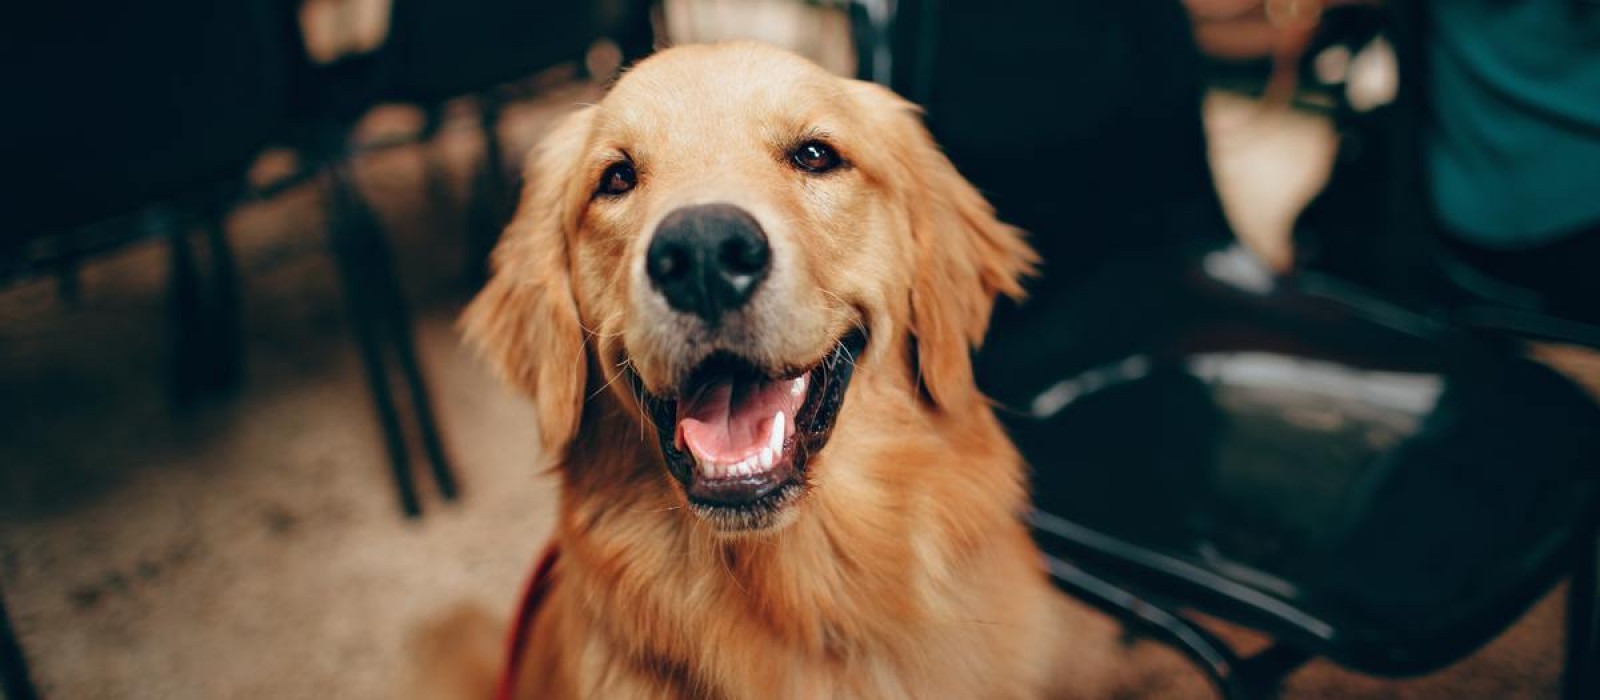 Βρετανοί ερευνητές εξετάζουν αν οι σκύλοι έχουν την ικανότητα να ανιχνεύουν τον κορωνοϊό